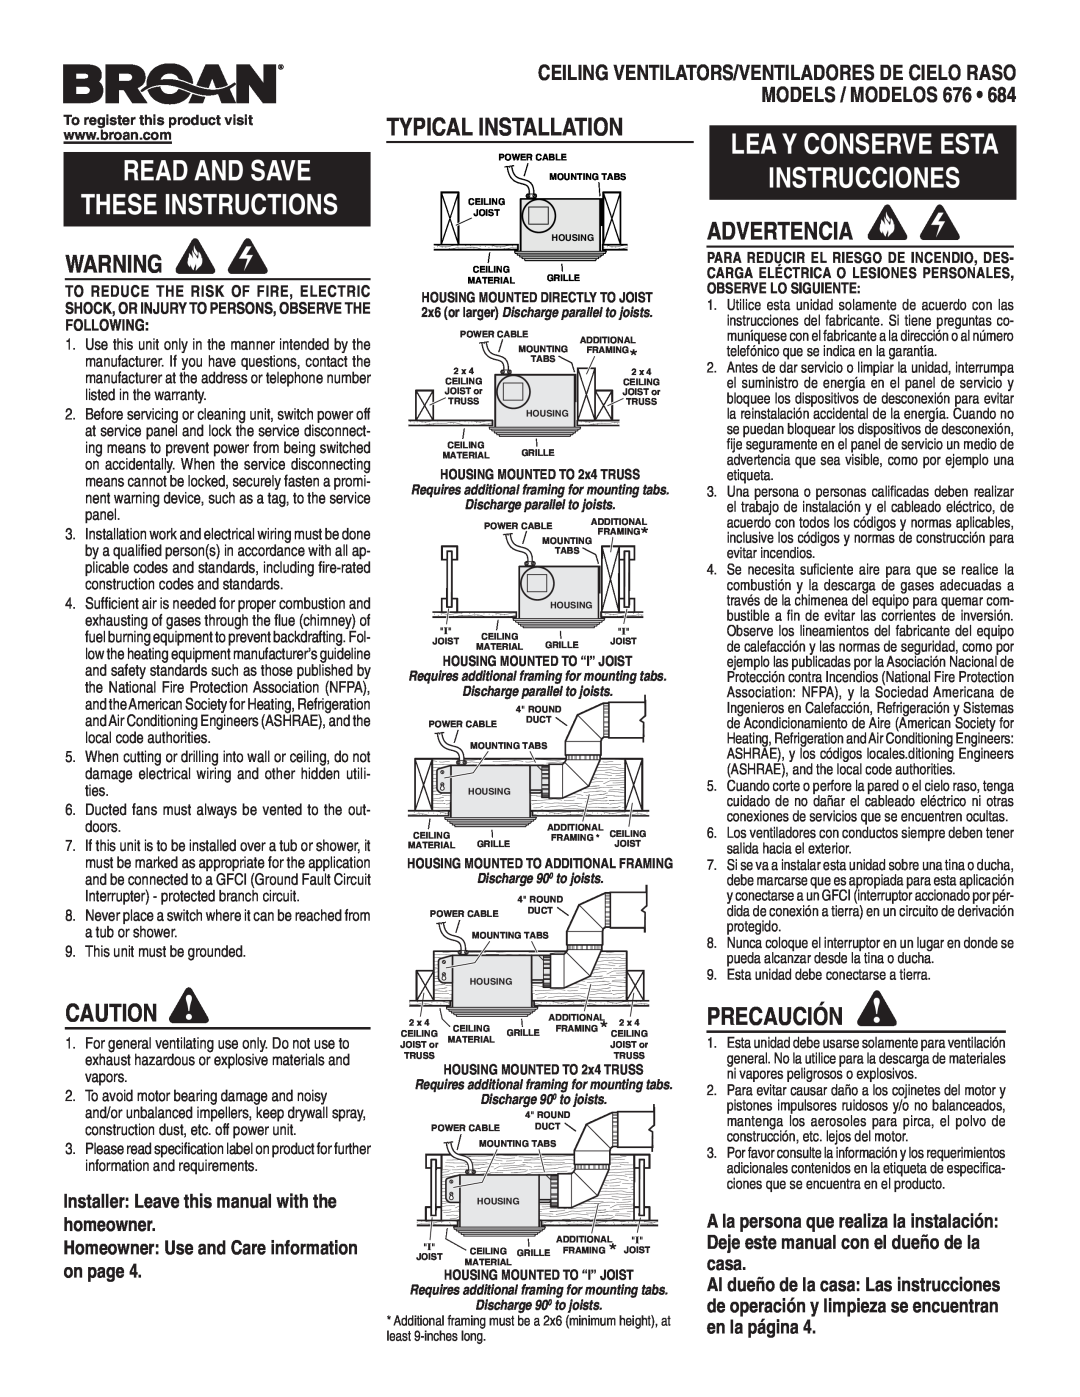 Broan 684, 676 warranty Typical Installation, Advertencia, Precaución, Installer Leave this manual with the homeowner 